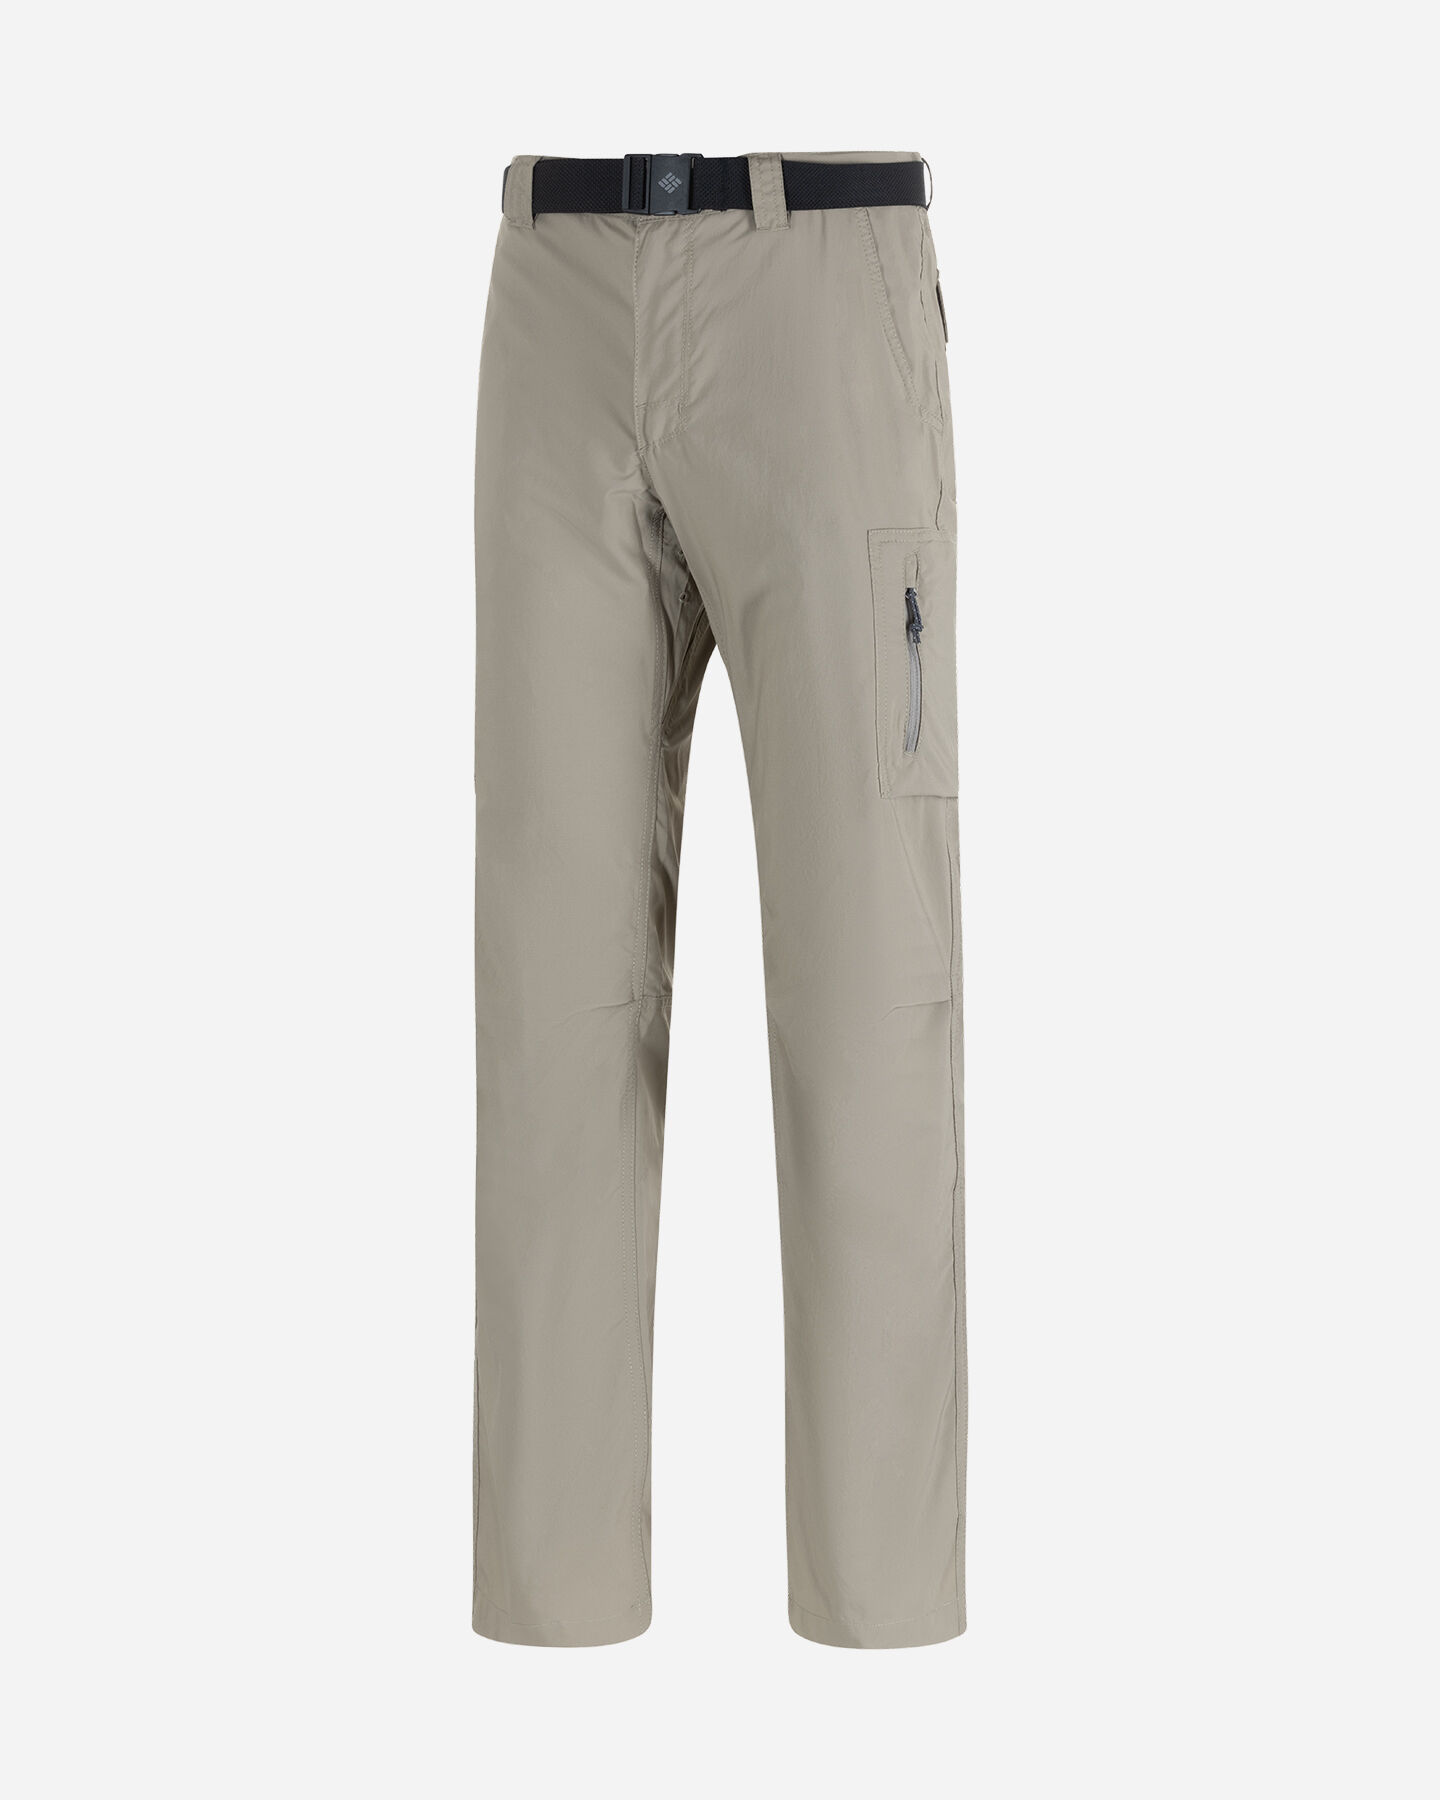  Pantalone outdoor COLUMBIA SILVER RIDGE M S5553524|221|3032 scatto 0